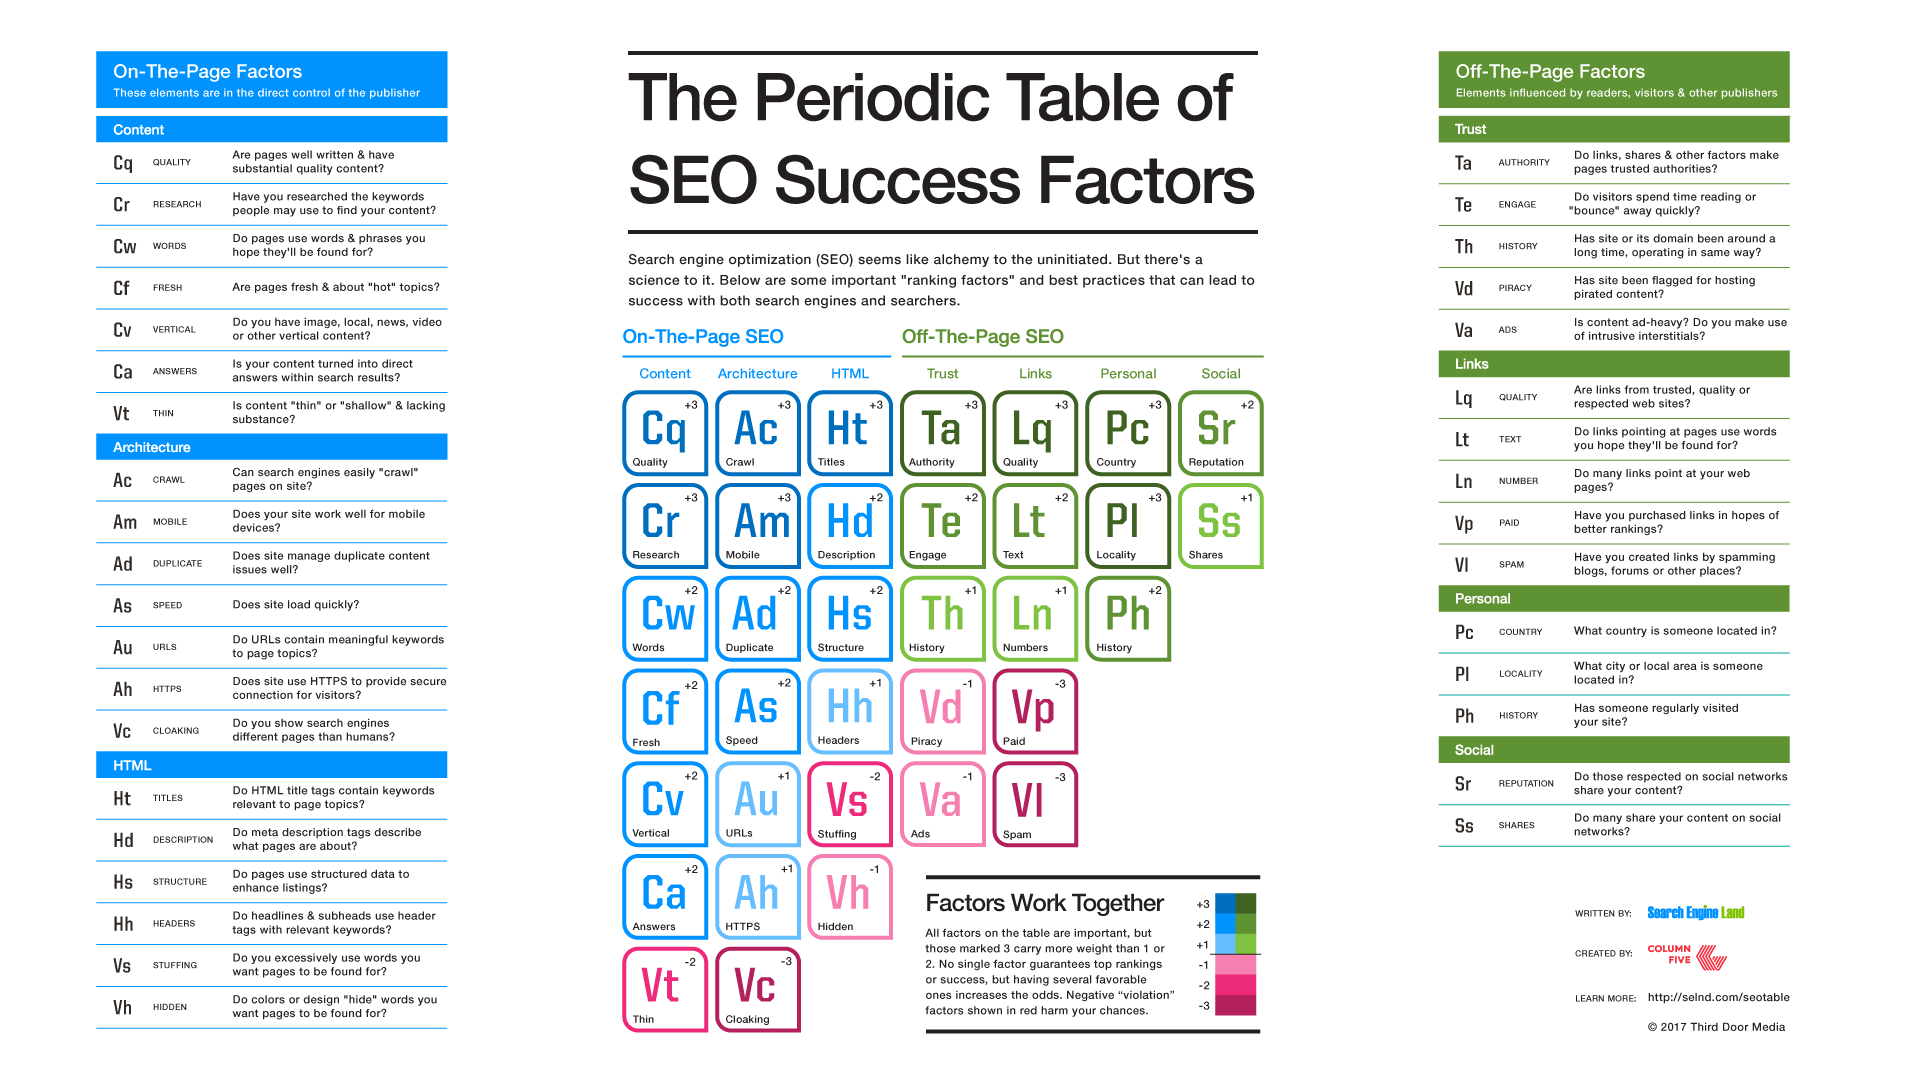 Periodic Table Of Seo Success Factors 2017 - HD Wallpaper 